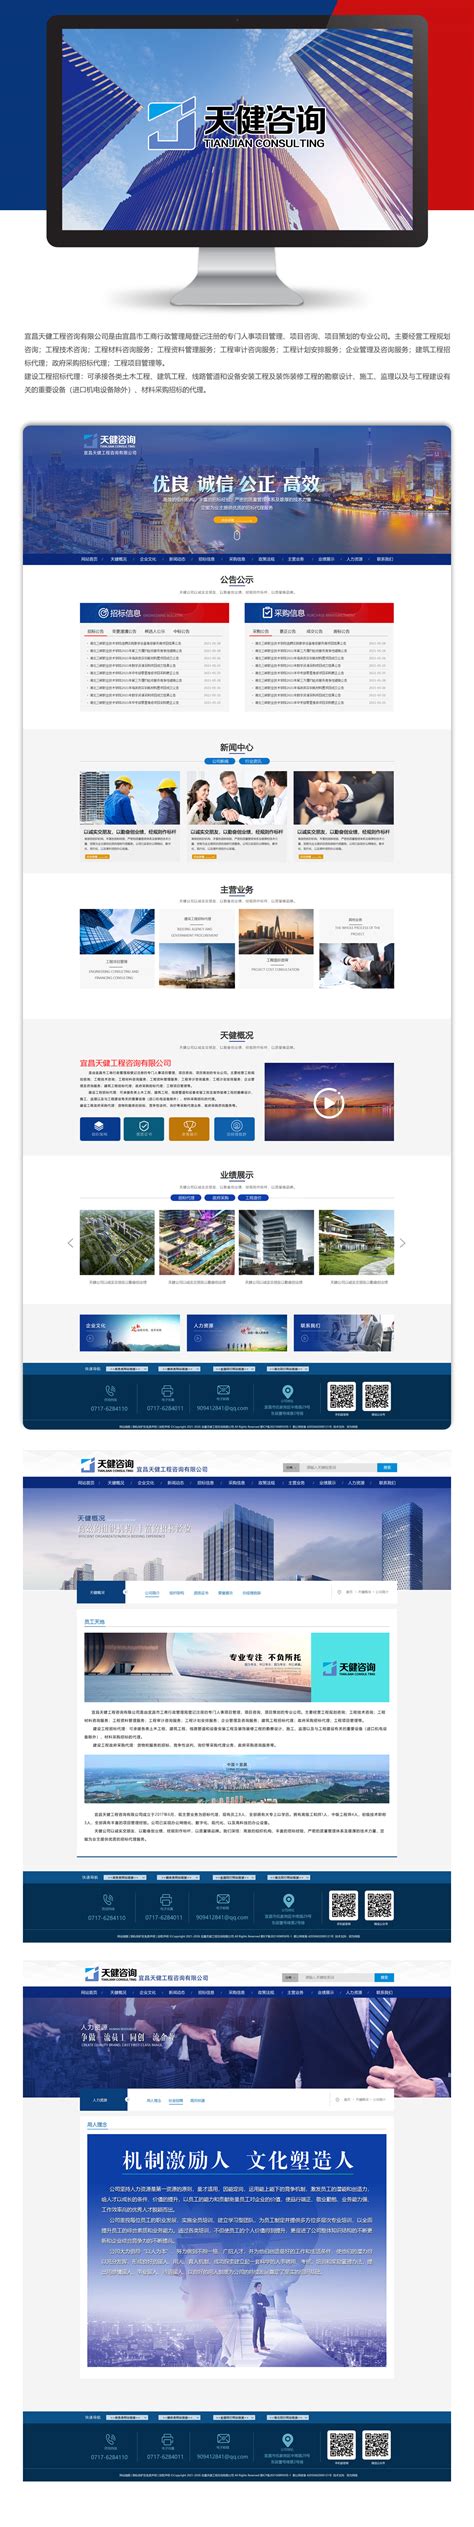 宜昌网站建设策划内容